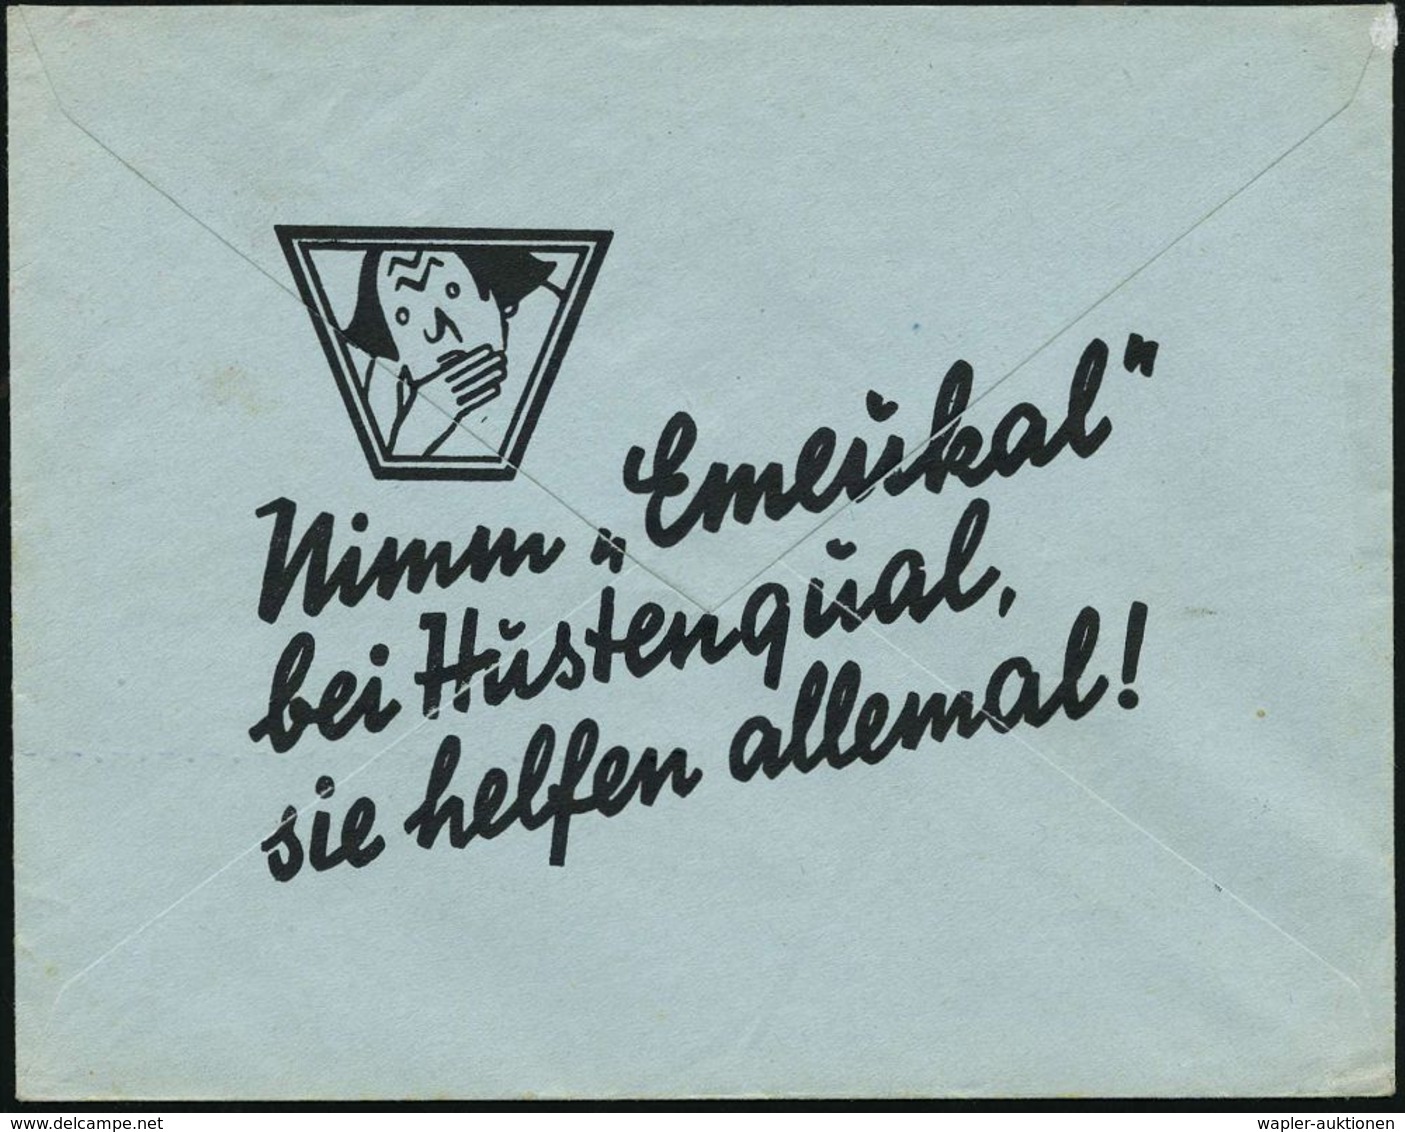 NÜRNBERG/ 13/ DR.SOLDAN'S/ Emeukal/ HUSTENBONBONS 1930 (24.11.) AFS (Kopf Mit Hand Vor Mund = Logo) Rs. Motivgl. Reklame - Apotheek